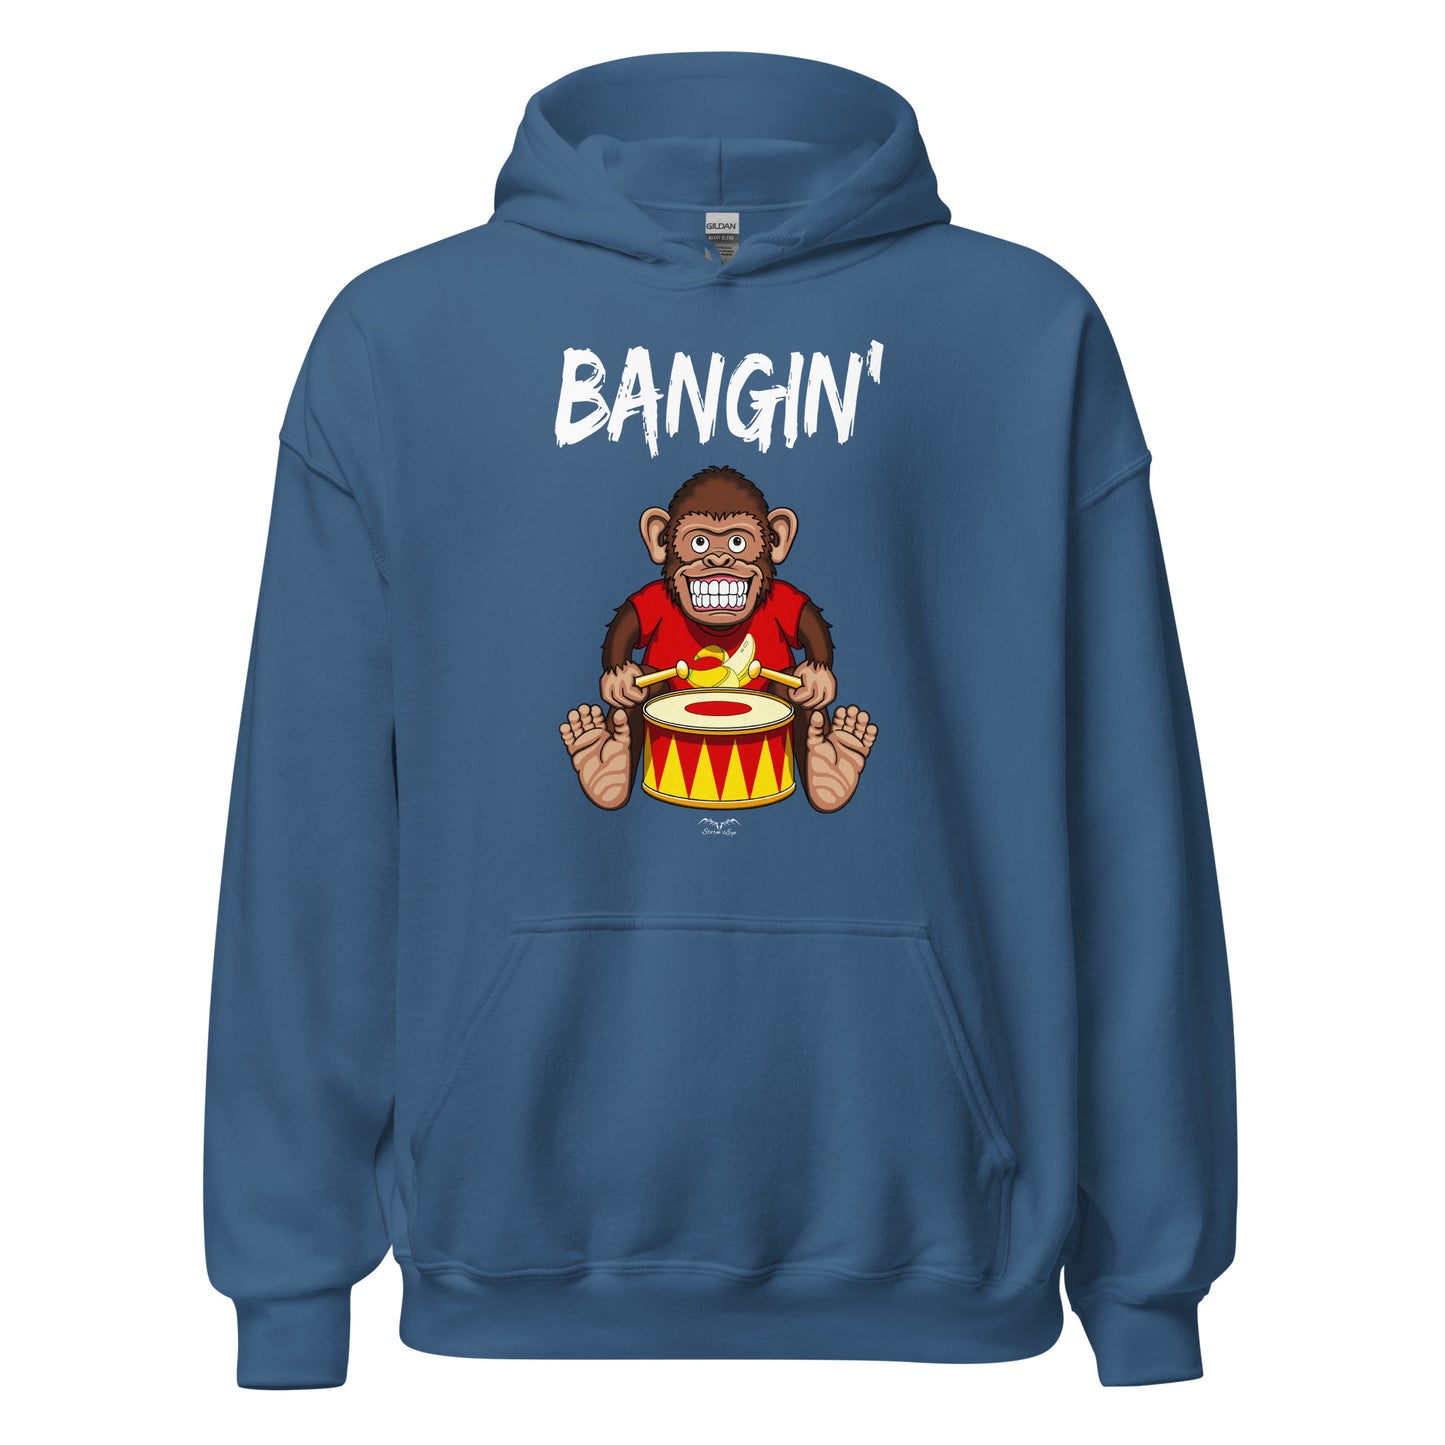 Bangin drummer monkey hoodie, blue, by Stormseye Design